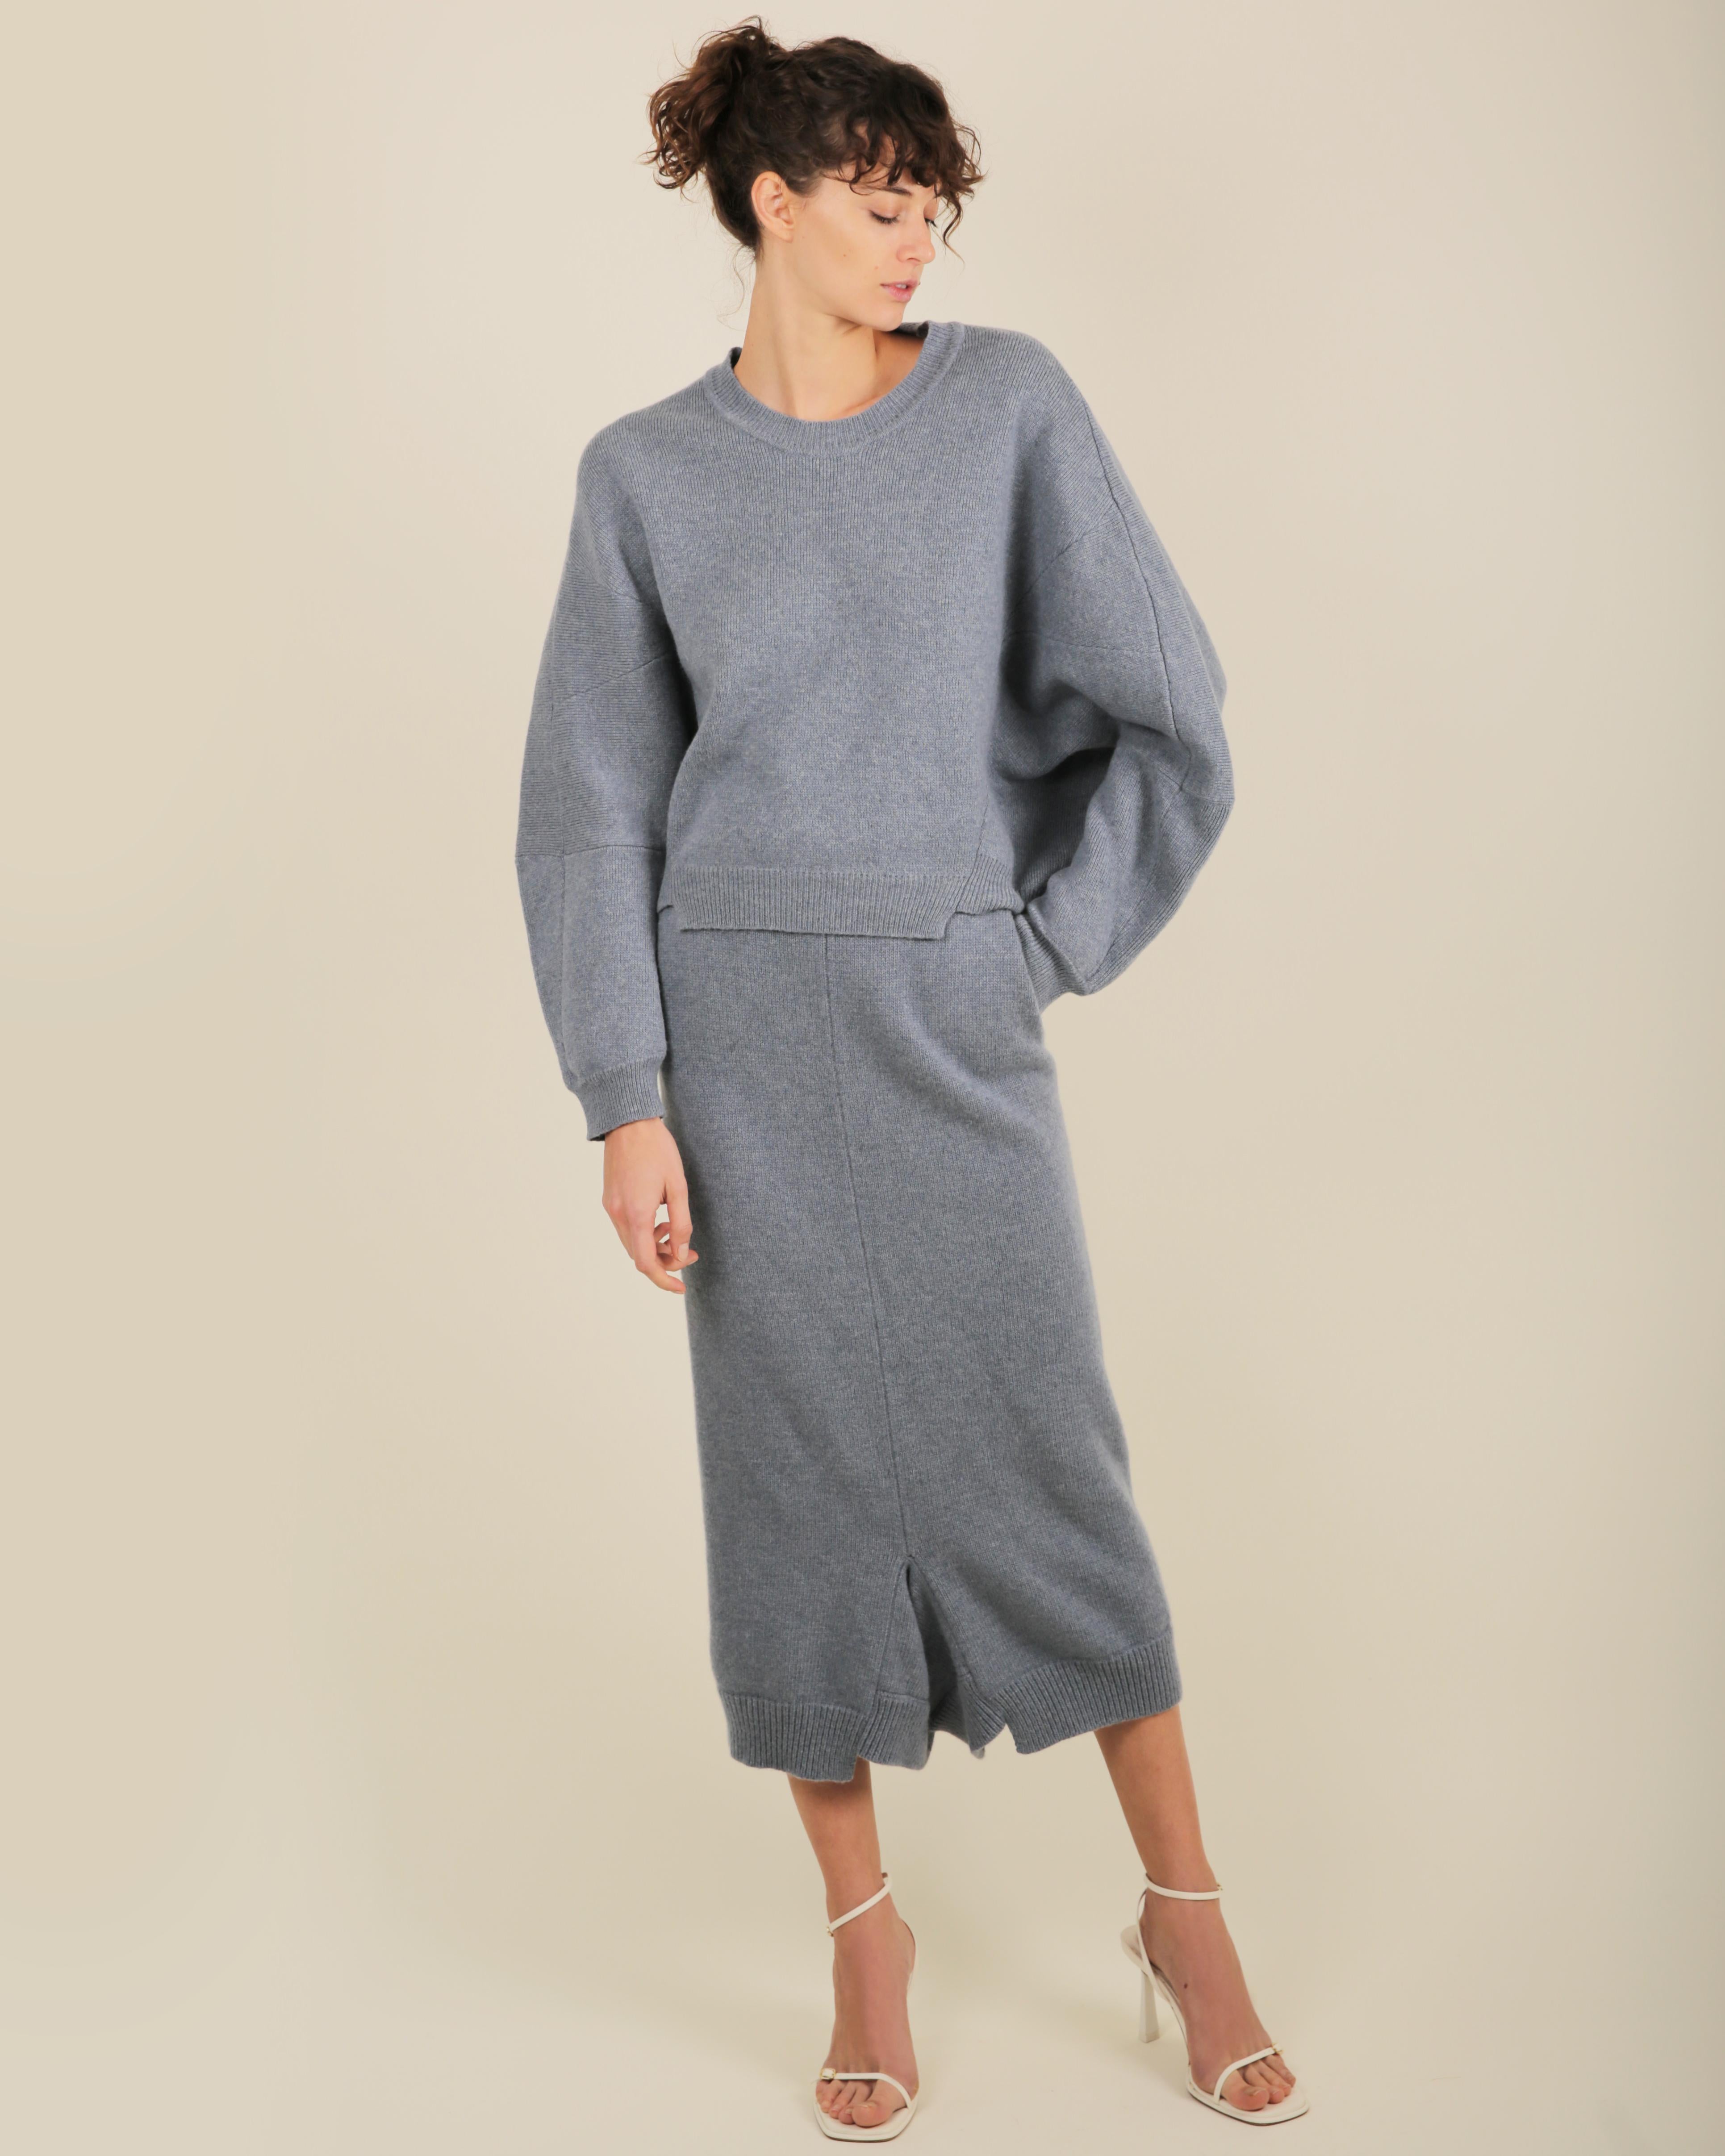 Stella McCartney Fall18 blue oversized wool alpaca matching sweater dress pants For Sale 3